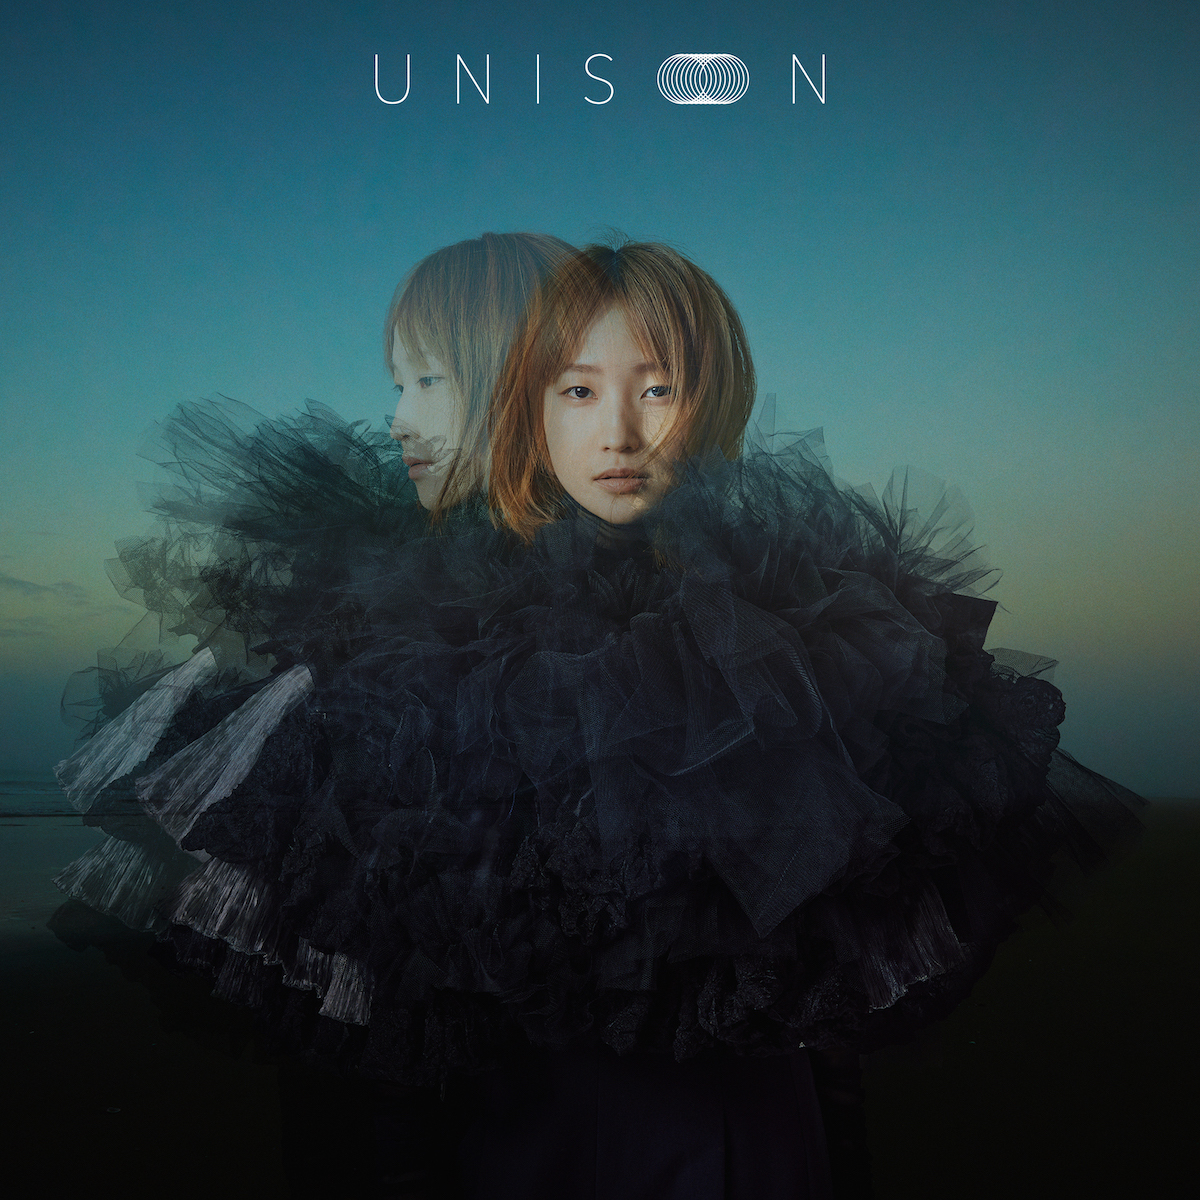 鞘師里保 3rd EP『UNISON』ジャケットデザイン通常